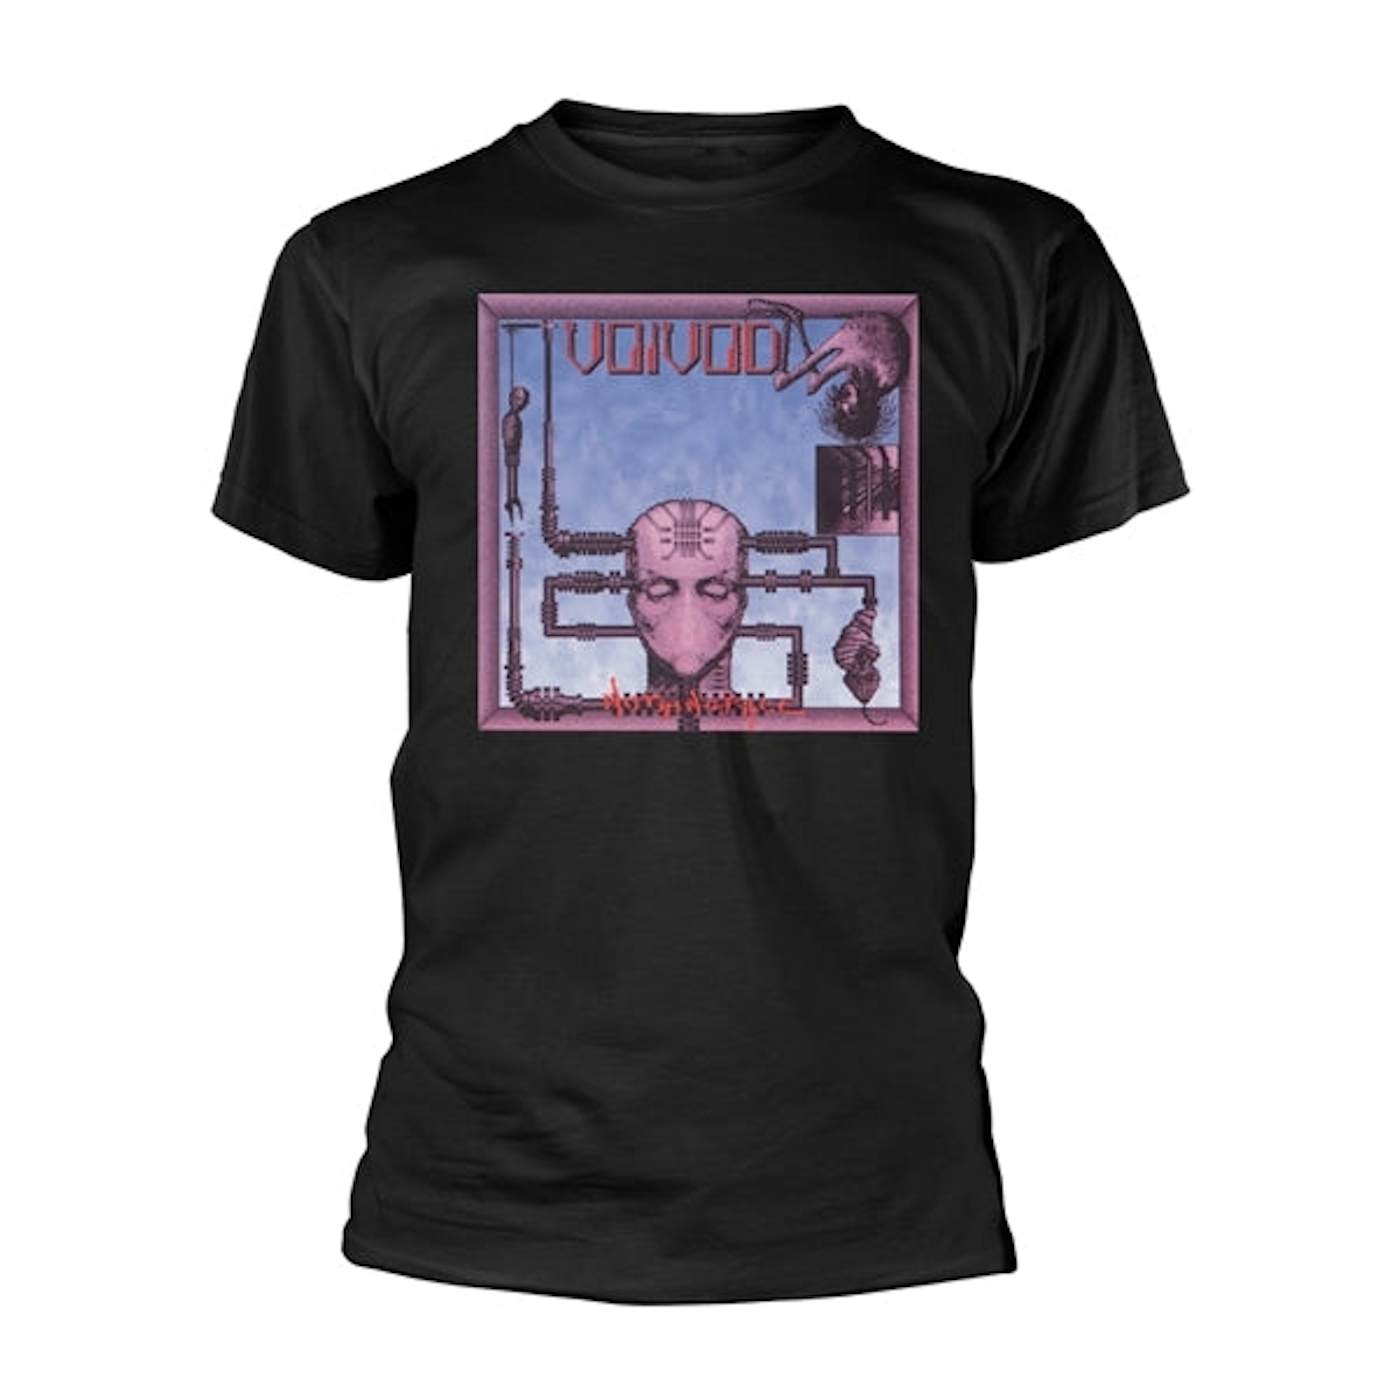 Voivod T Shirt - Nothingface